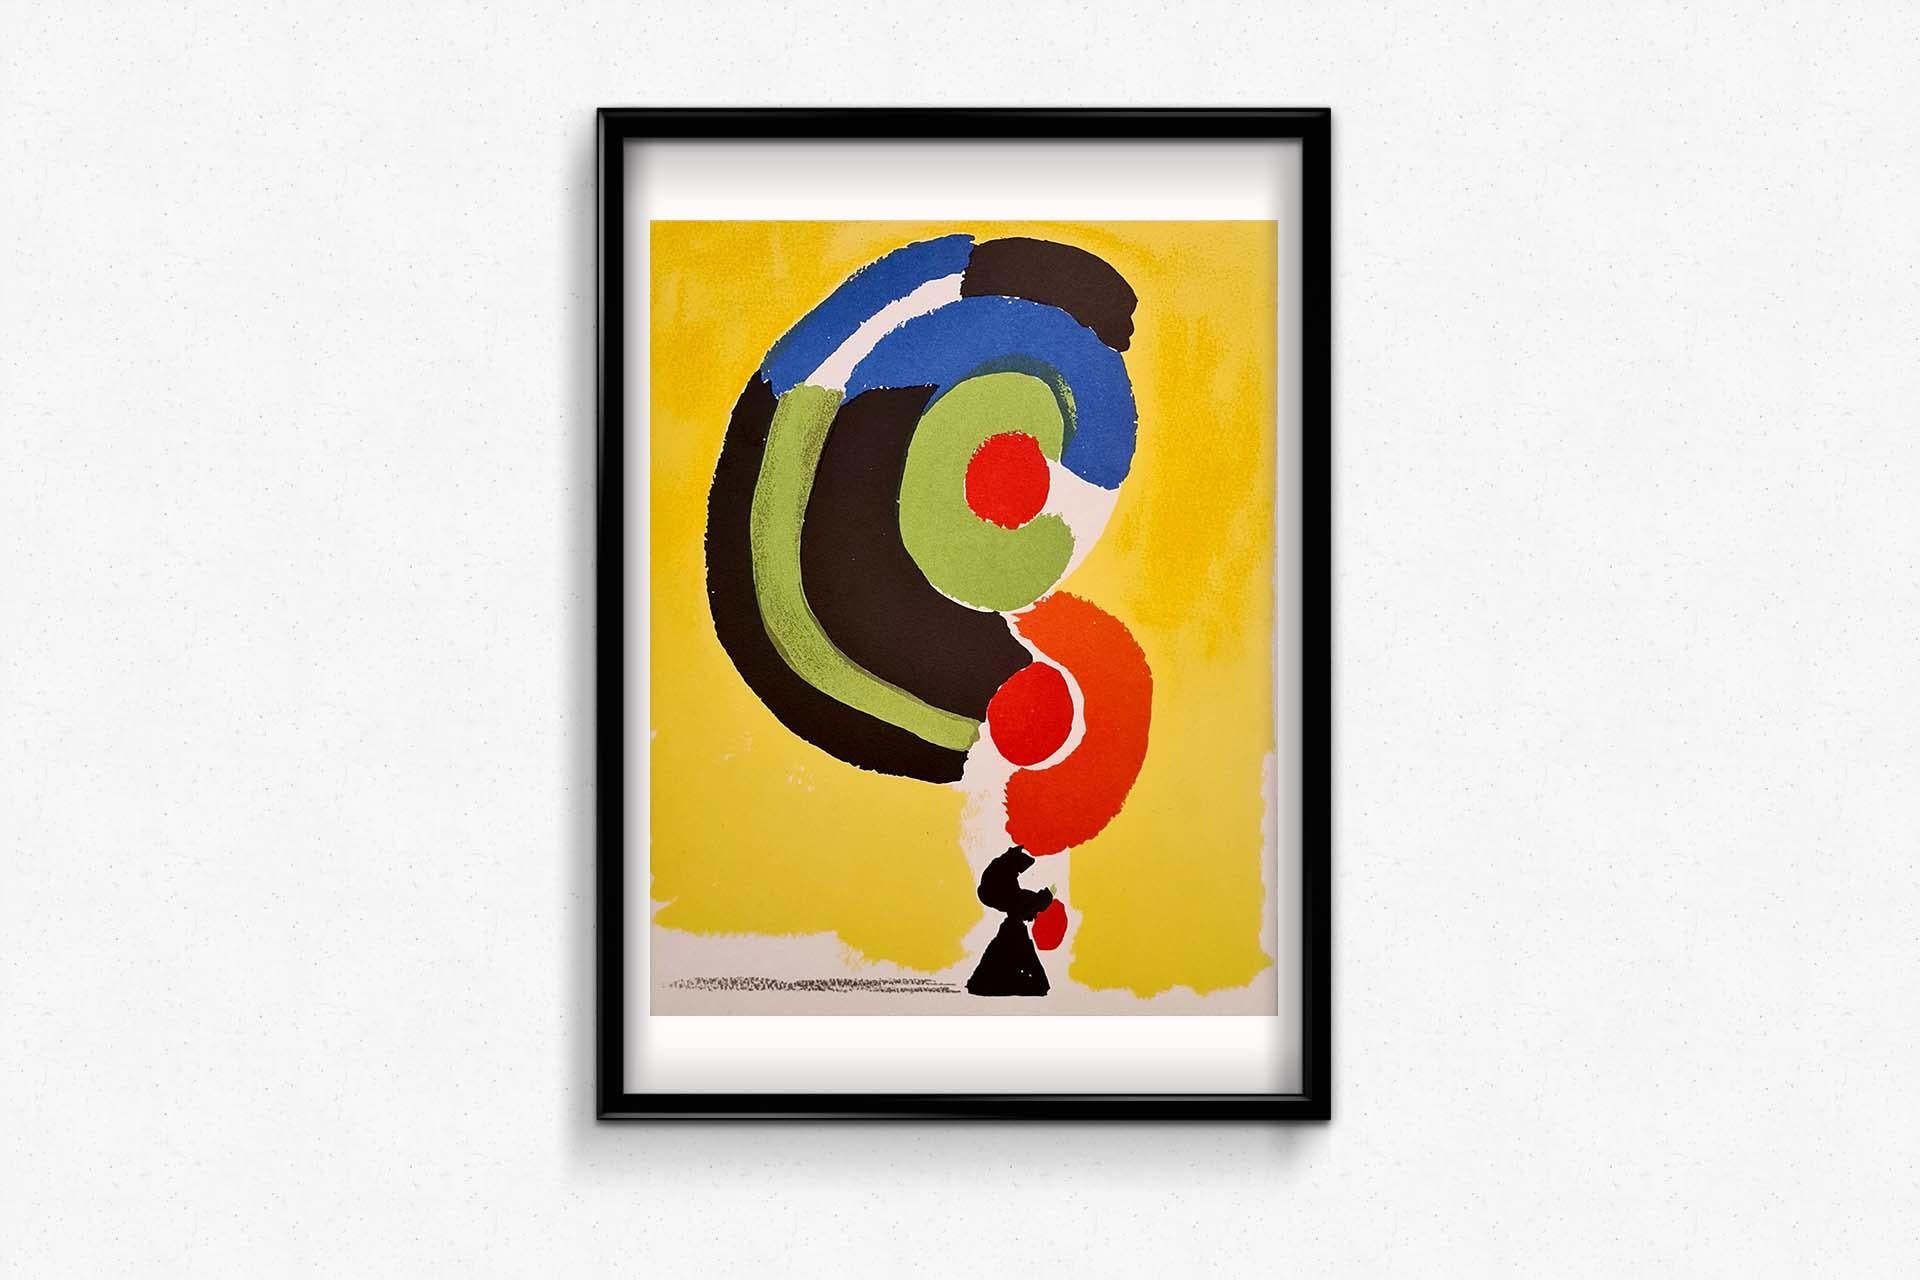 La lithographie de Sonia Delaunay de 1972, fruit d'une collaboration avec le célèbre atelier Mourlot, est un témoignage vibrant de la maîtrise de la couleur et de la forme par l'artiste. Cette pièce frappante, présentée dans l'influente publication